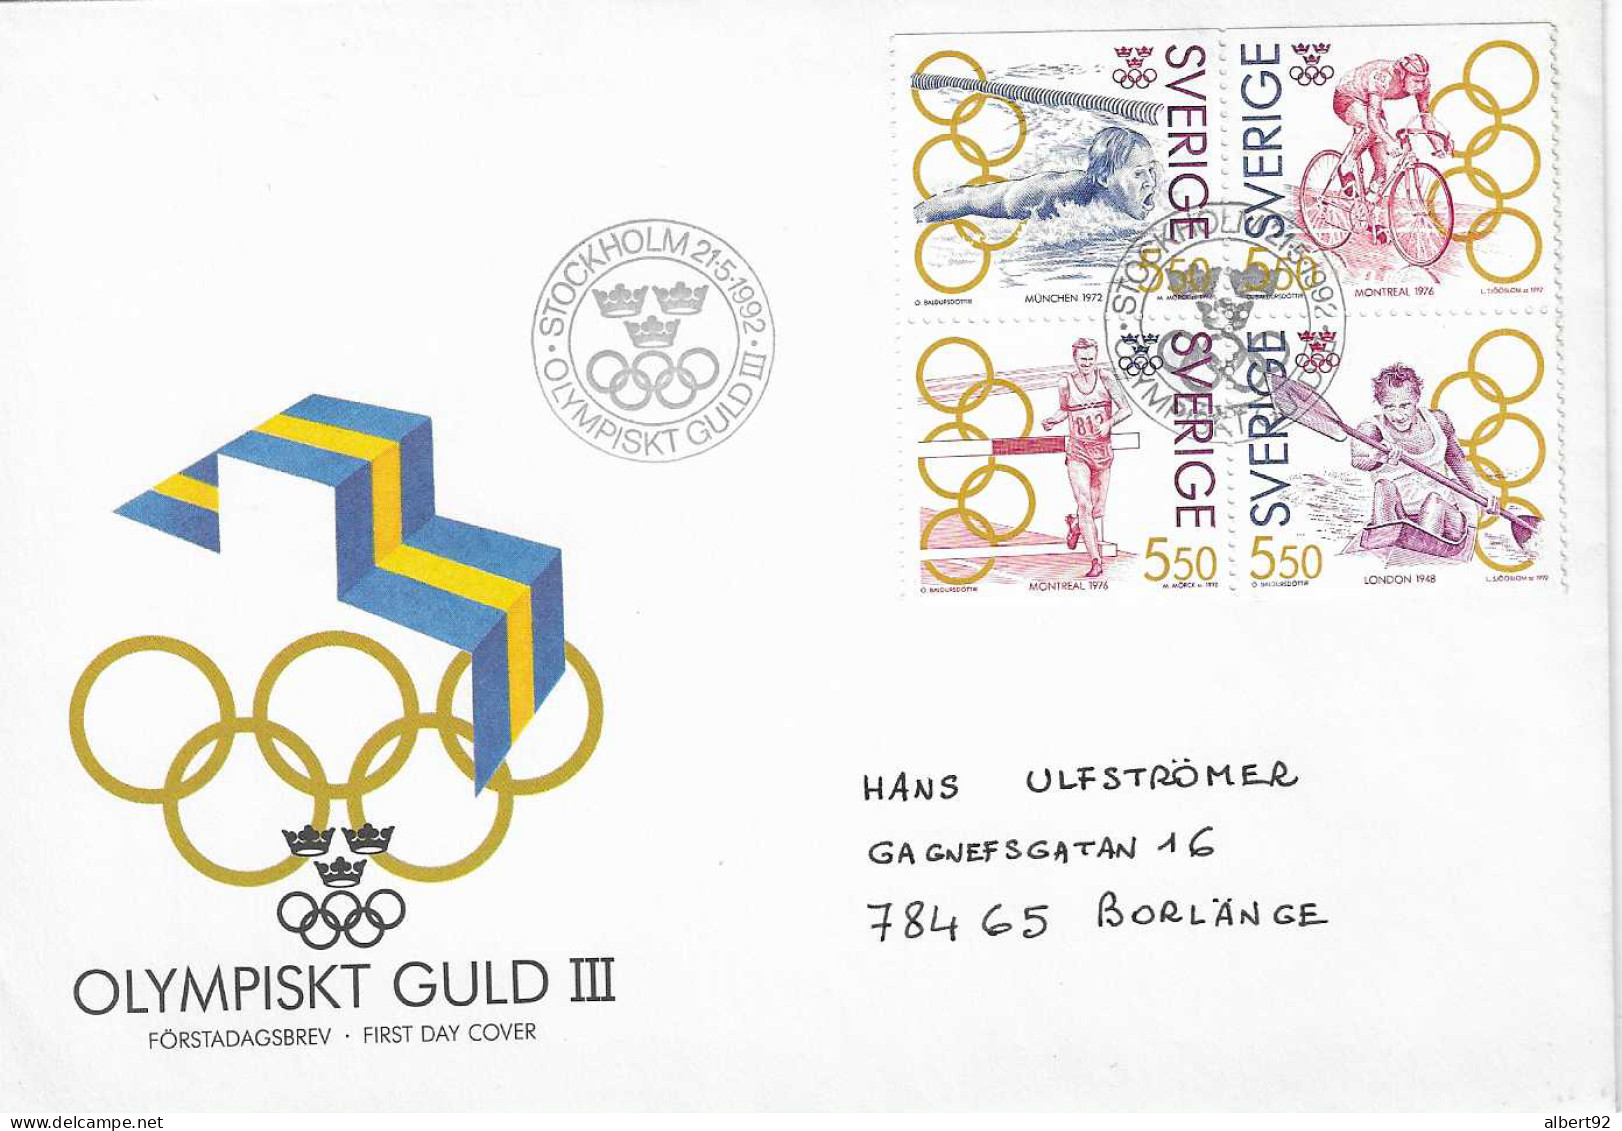 1992 Médaillés OR Suédois Aux Jeux Olympiques: Canoë (Londres 1948) Athlétisme, Cyclisme (Montréal 1976) Natation (1972) - Hiver 1932: Lake Placid